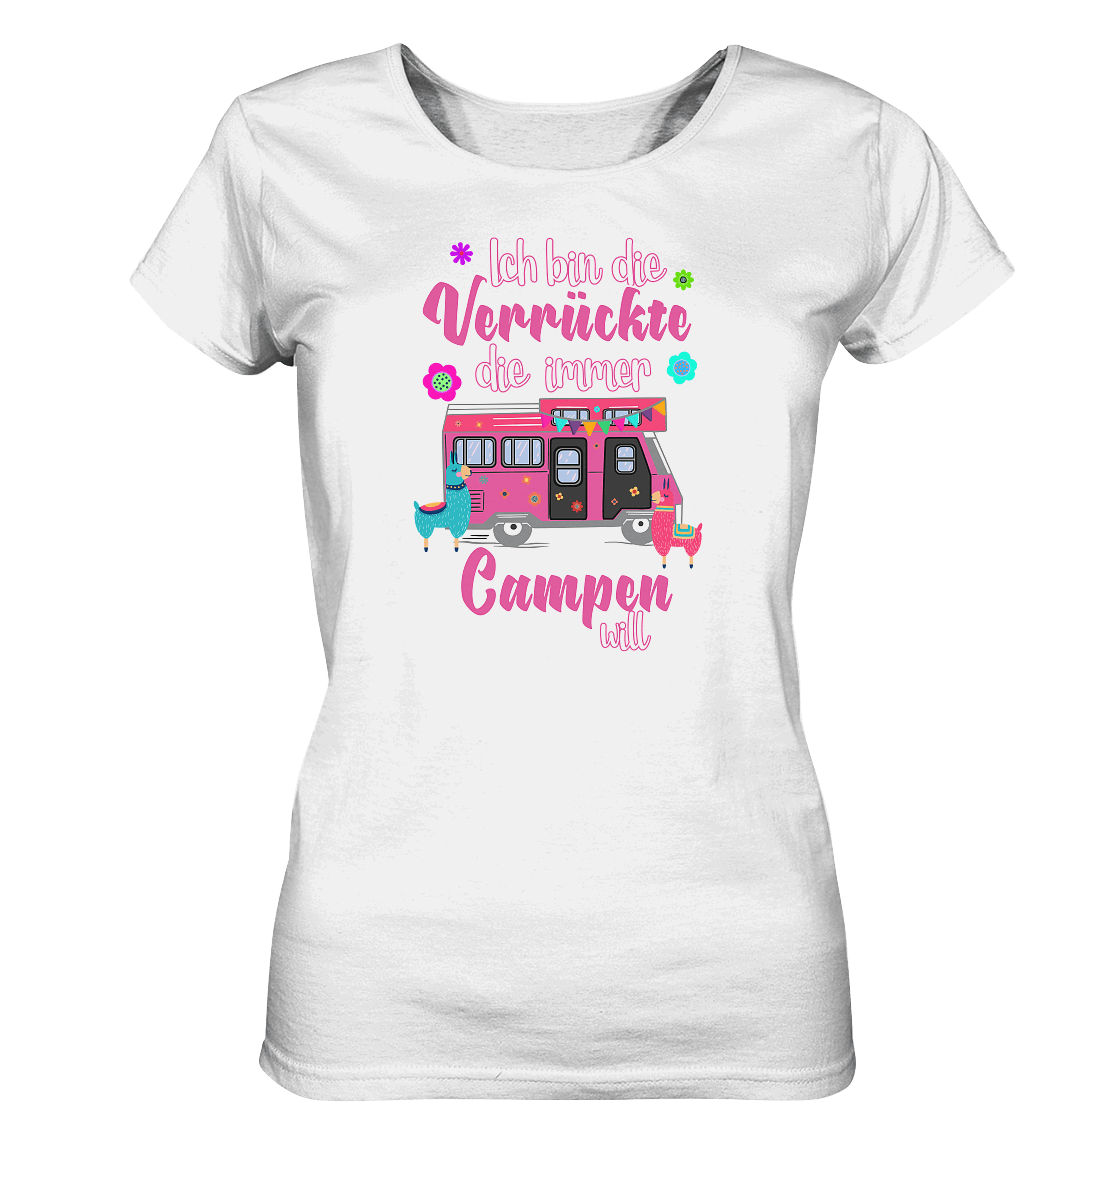 Ich bin die Verrückte, die immer Campen will (Wohnmobil) - Ladies Organic Shirt